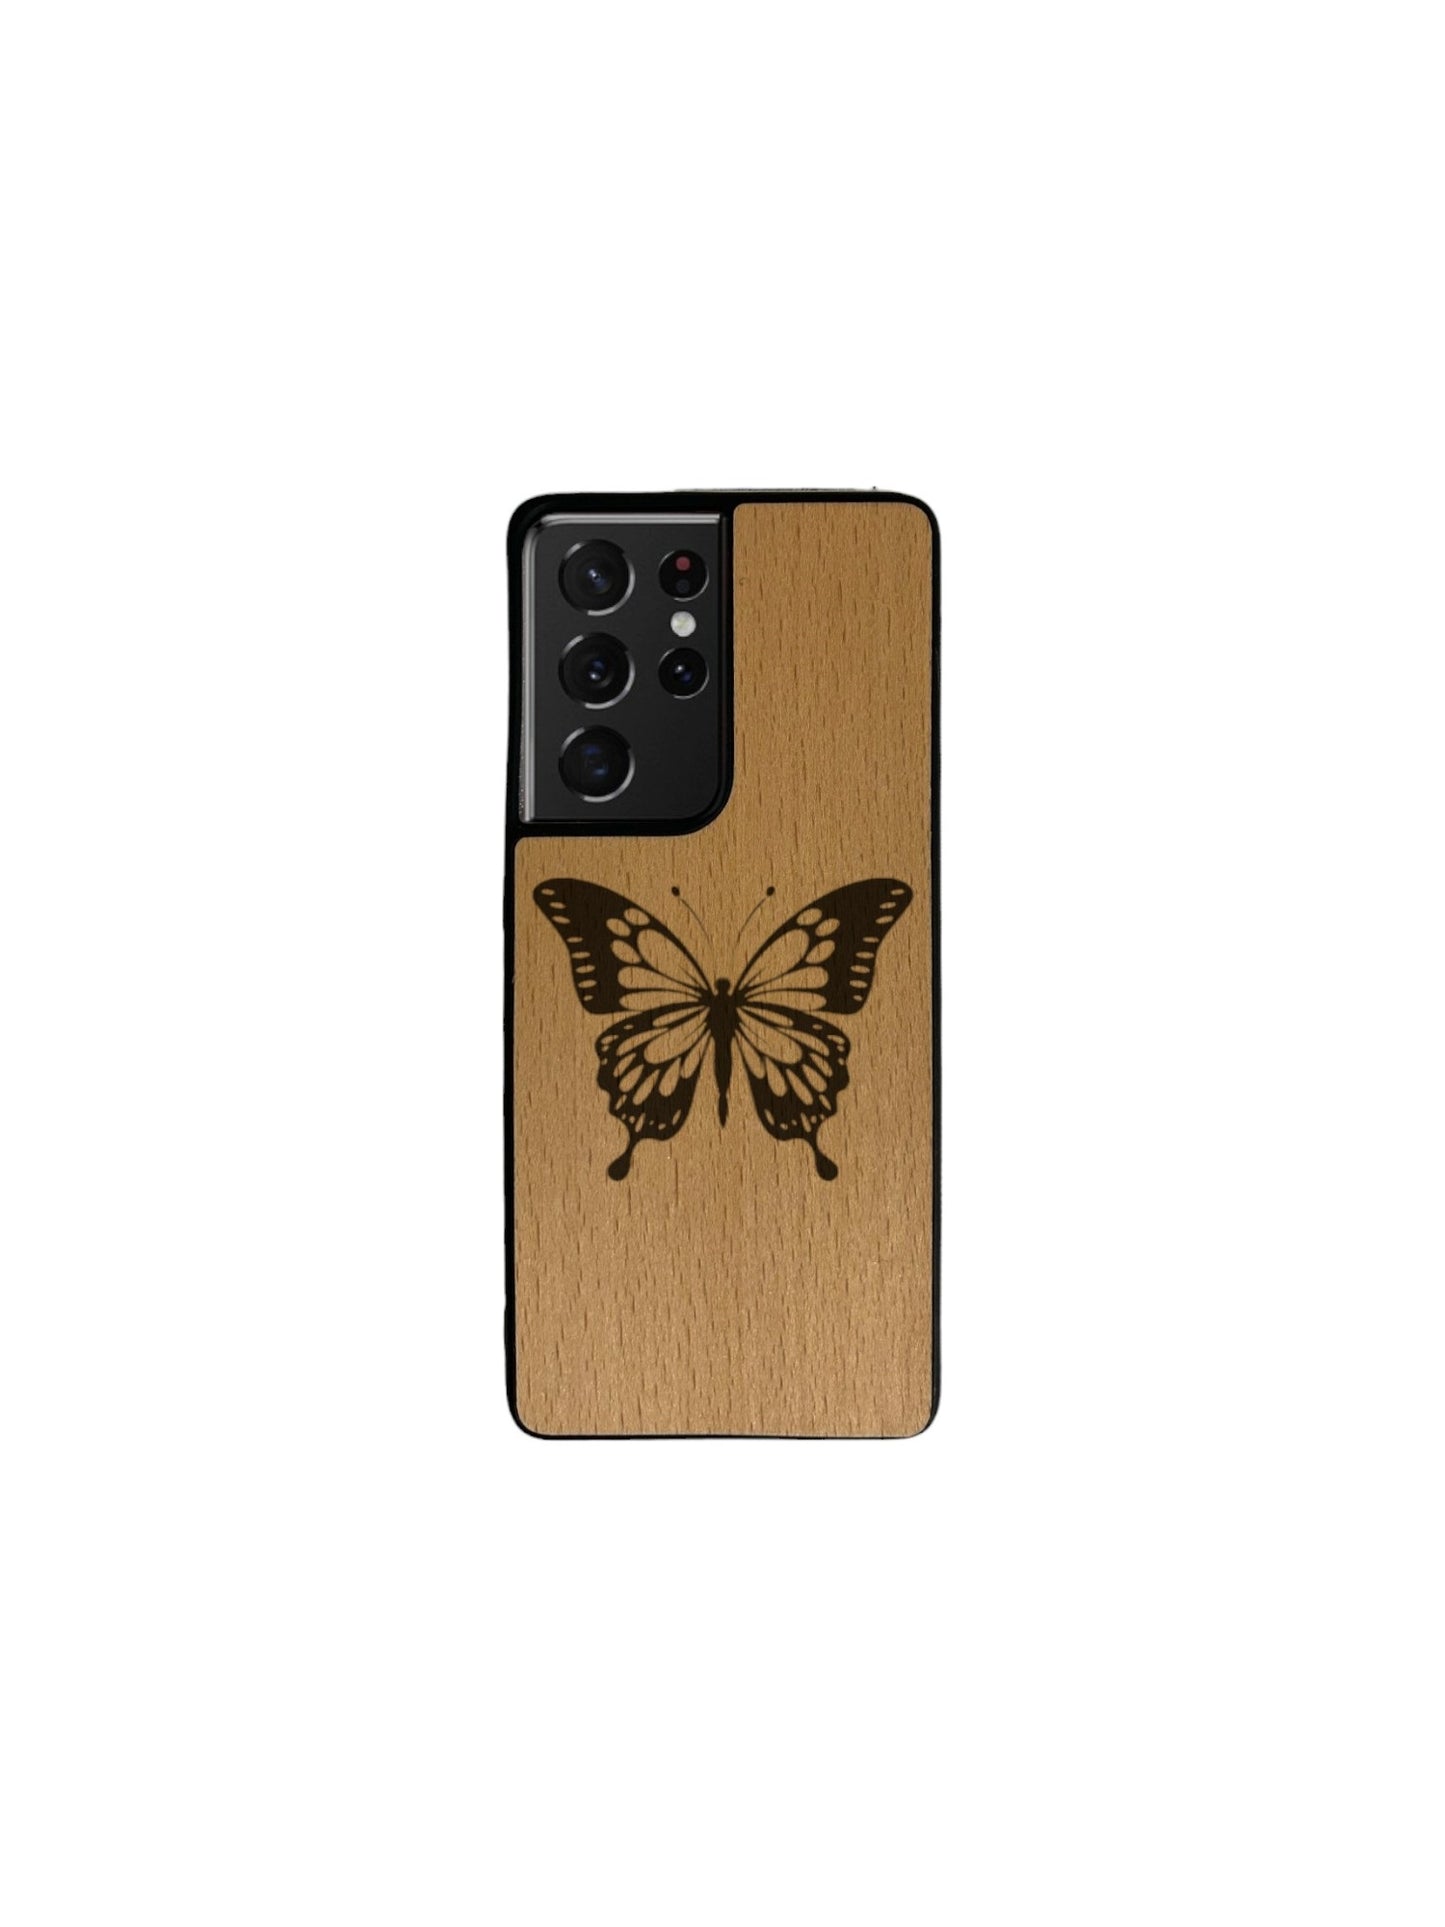 Coque Samsung Galaxy S - Papillon